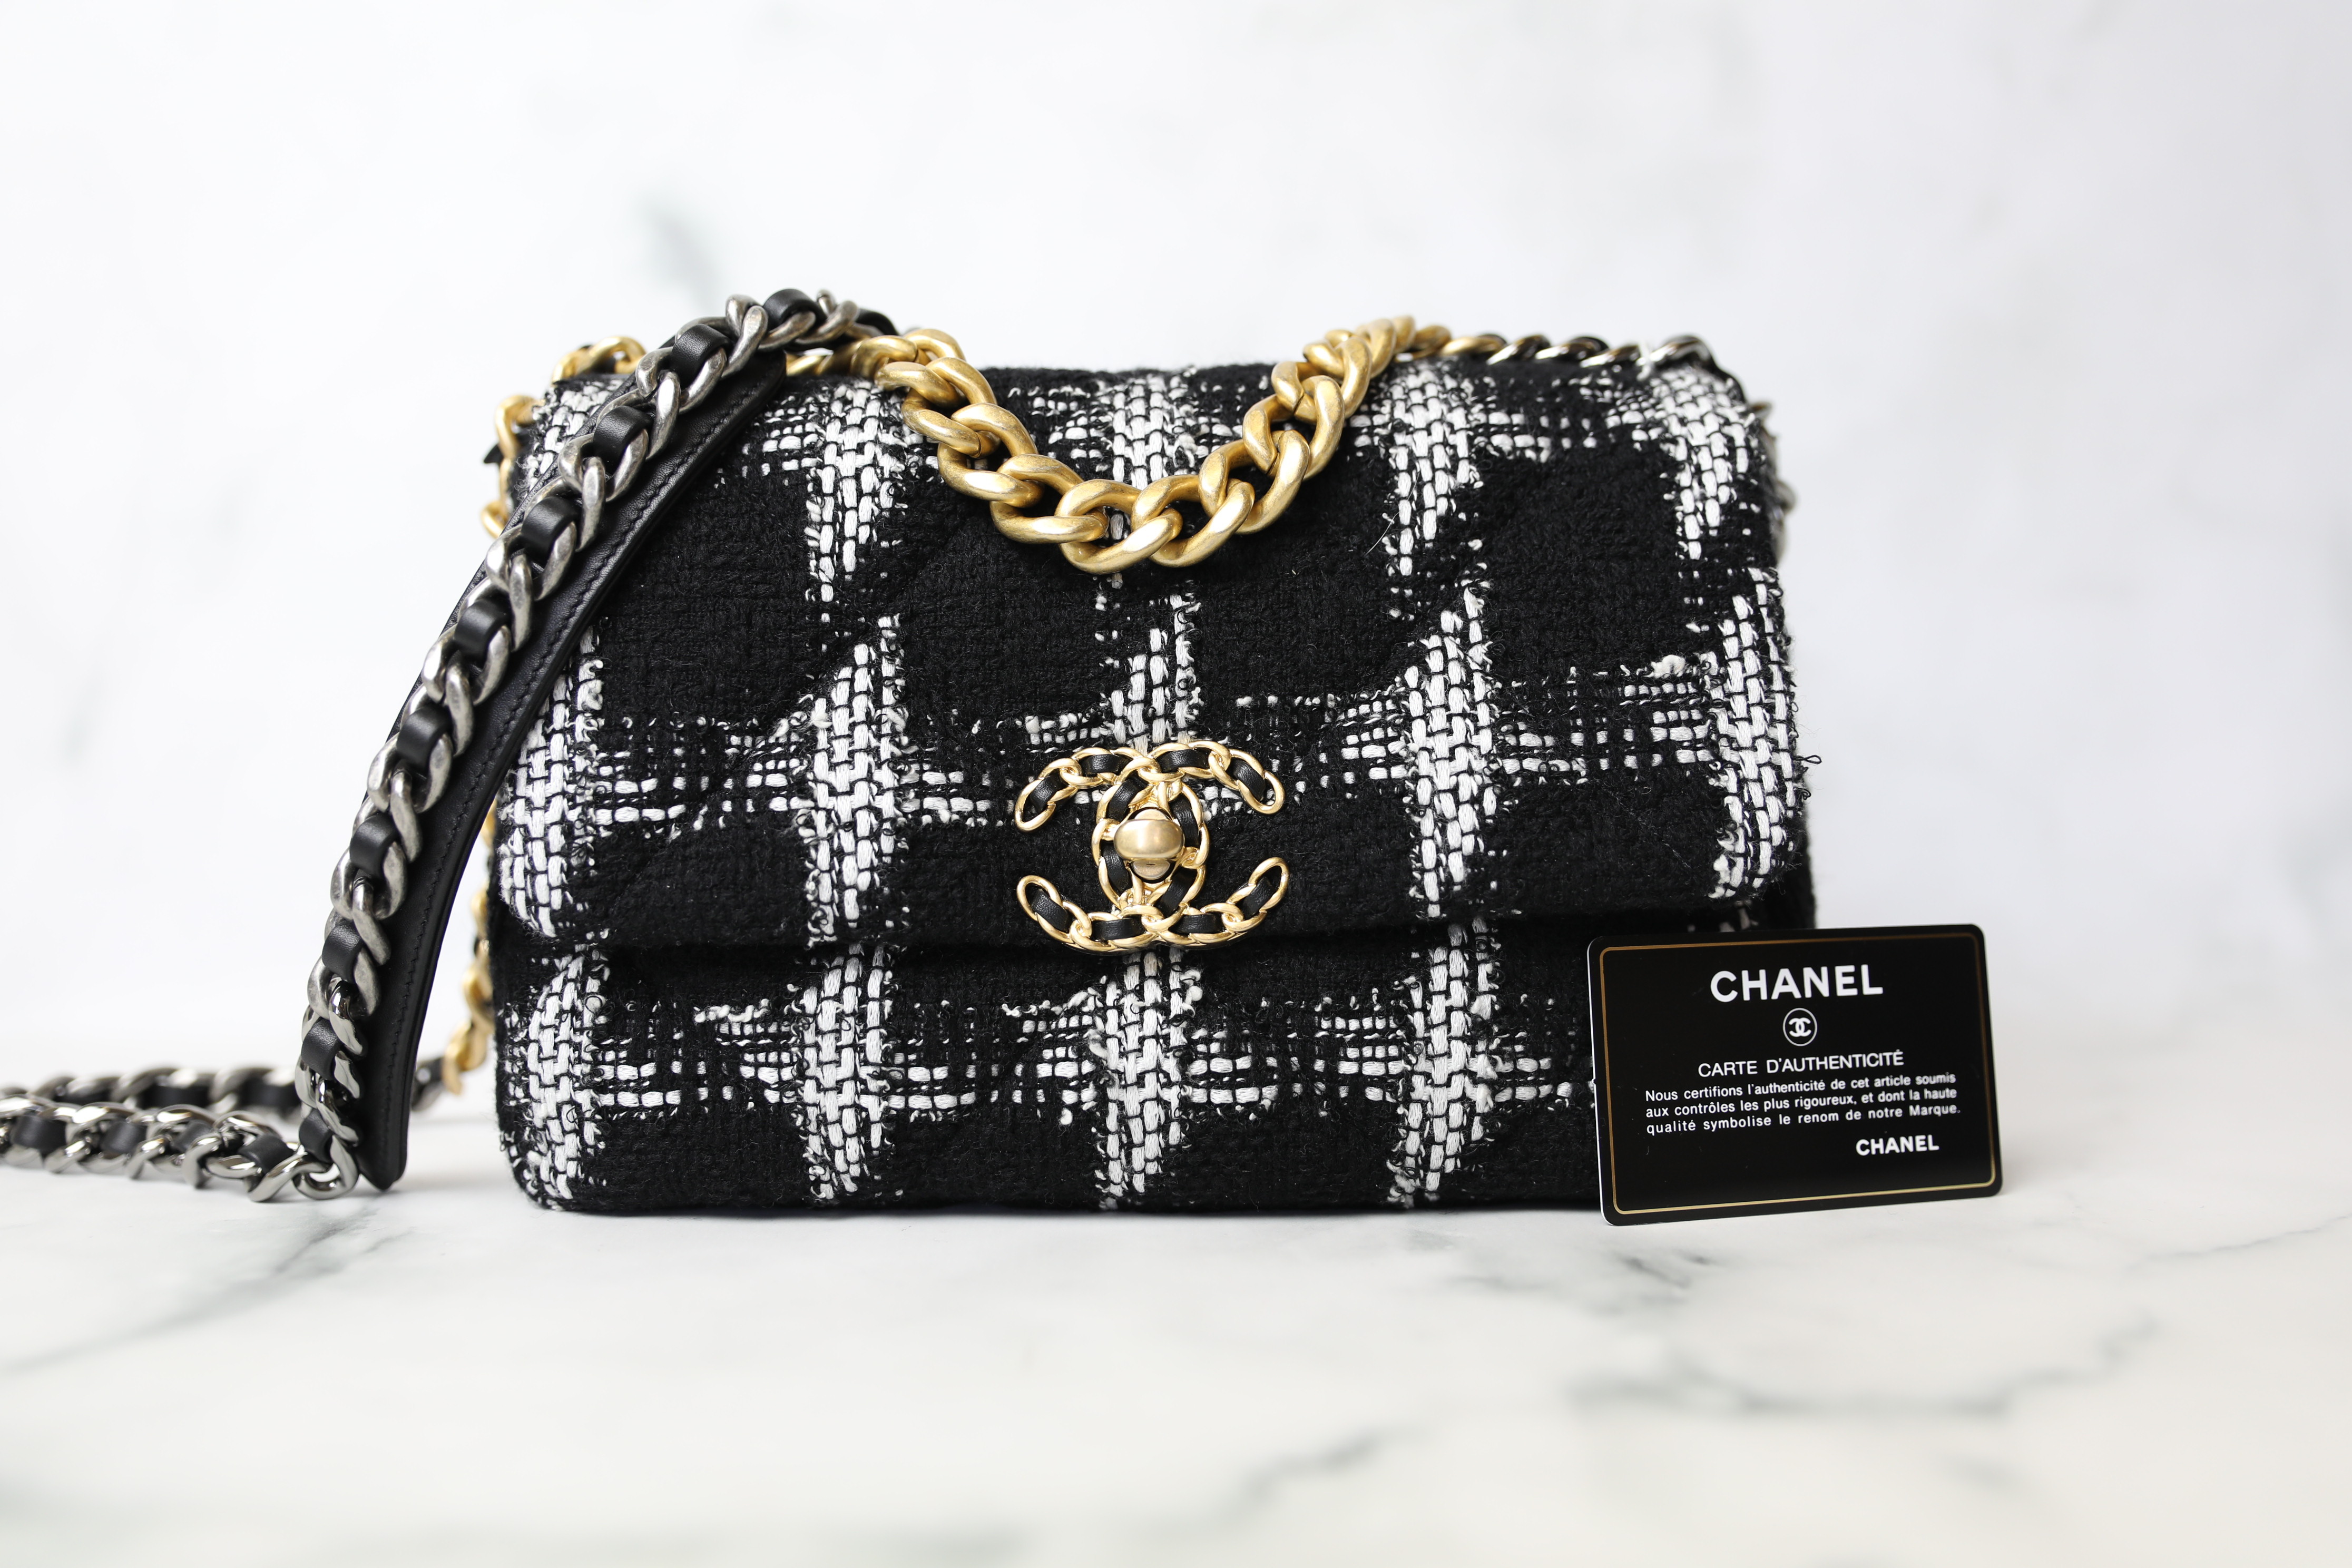 Chanel 19 Wristlet Pouch, Black Lambskin, New in Box - Julia Rose Boston